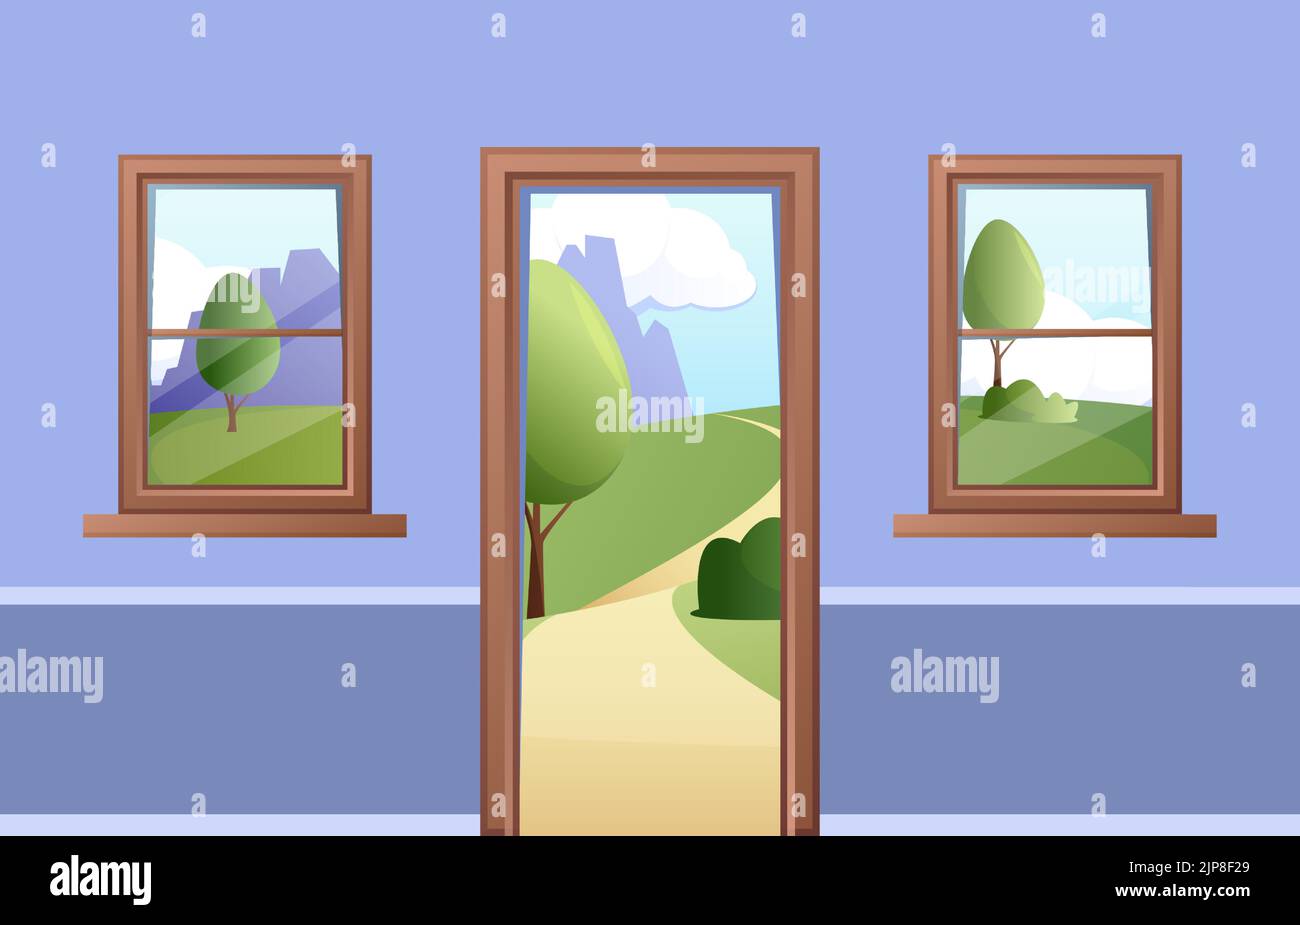 Öffnen Sie die Tür und das Fenster. Cartoon Valley Landschaft mit Dorffeldern, Sommertageszene durch den Eingang. Vektor-isolierte Illustration. Schöne Natur im Freien mit Himmel und Bergen Stock Vektor